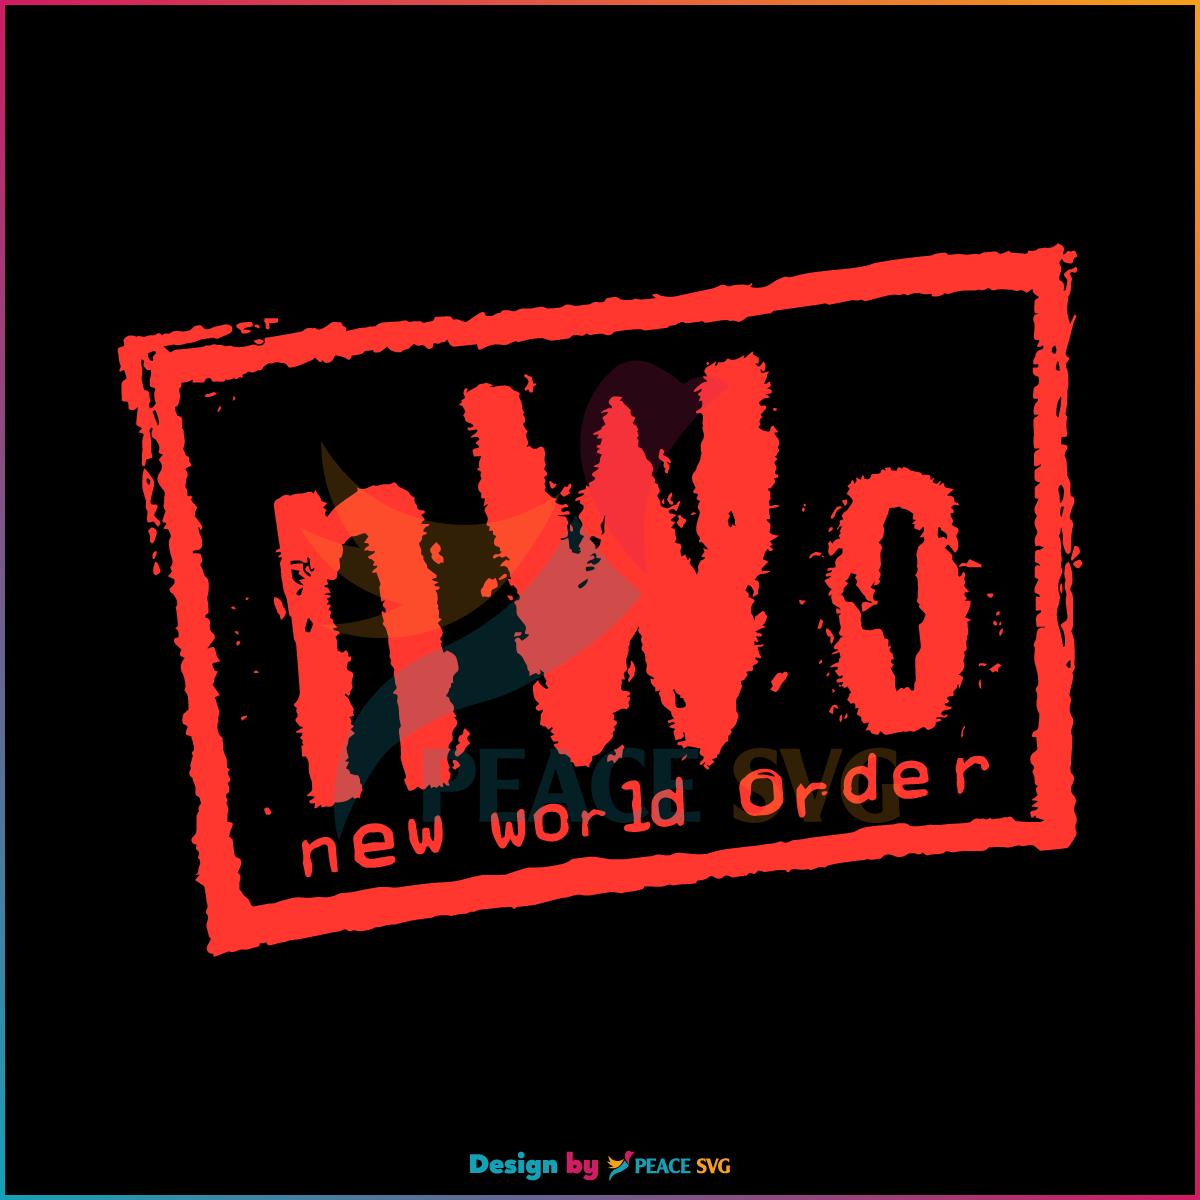 Vintage WCW NWO Wrestling Best SVG